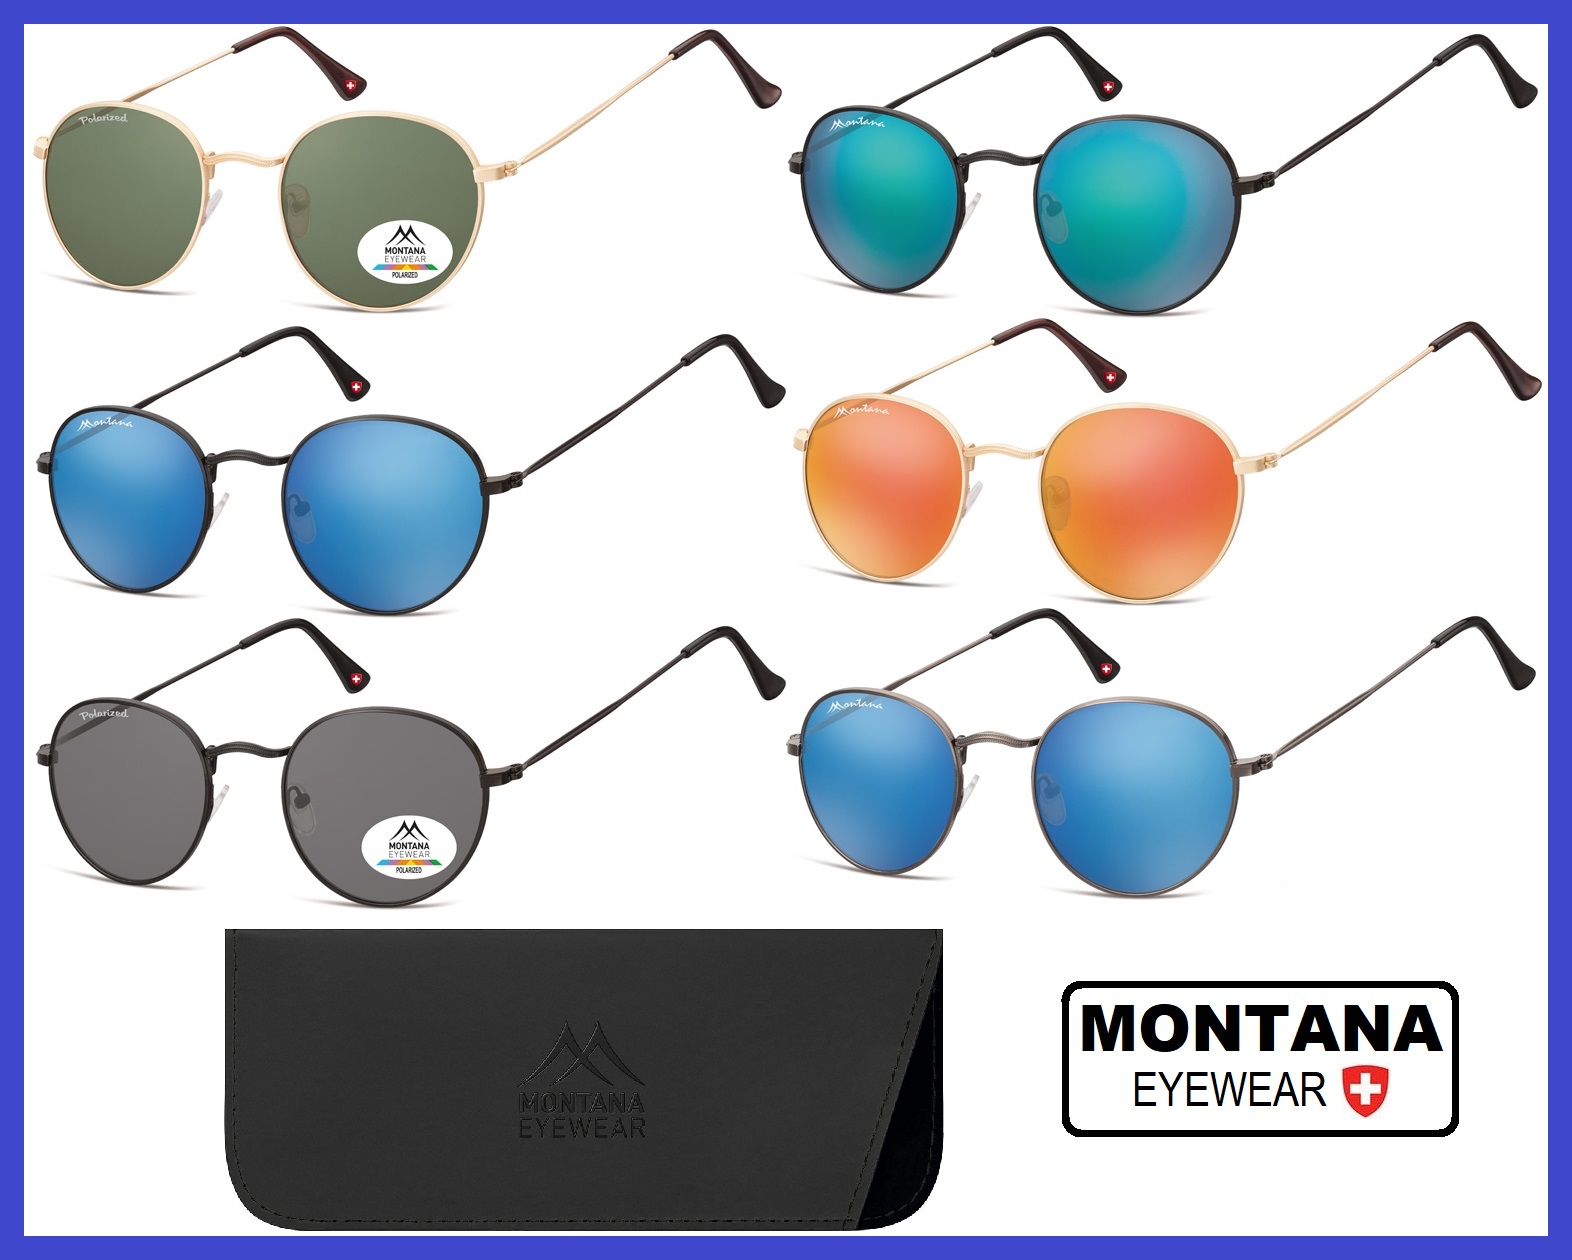 nuovi occhiali da sole uomo donna ragazzo colorati firmati montana rotondi a specchio polarizzati lenti blu azzurre verdi arancioni tondi in metallo occhiale sole unisex